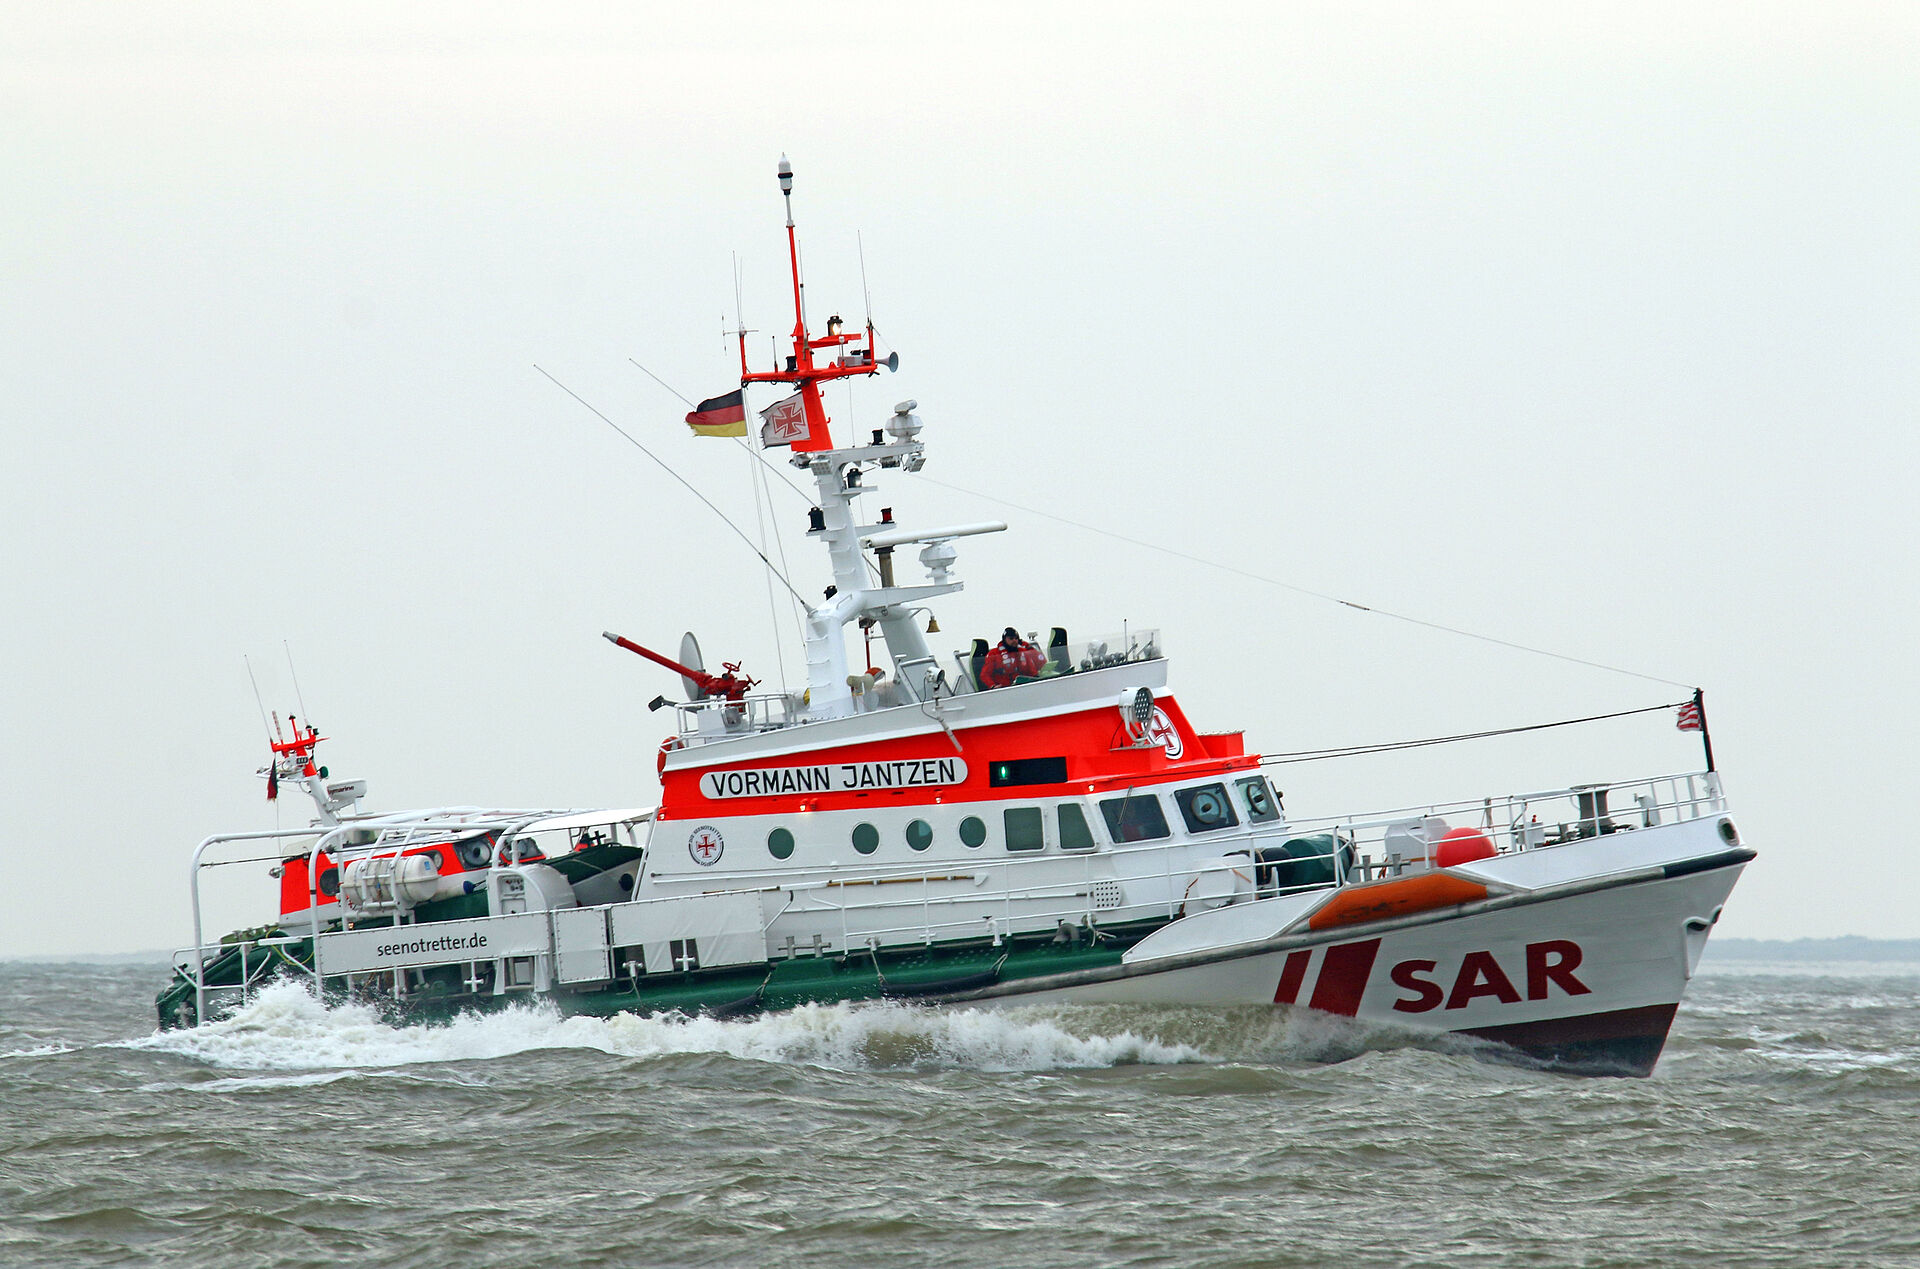 Der Seenotrettungskreuzer VORMANN JANTZEN im Einsatz auf hoher See